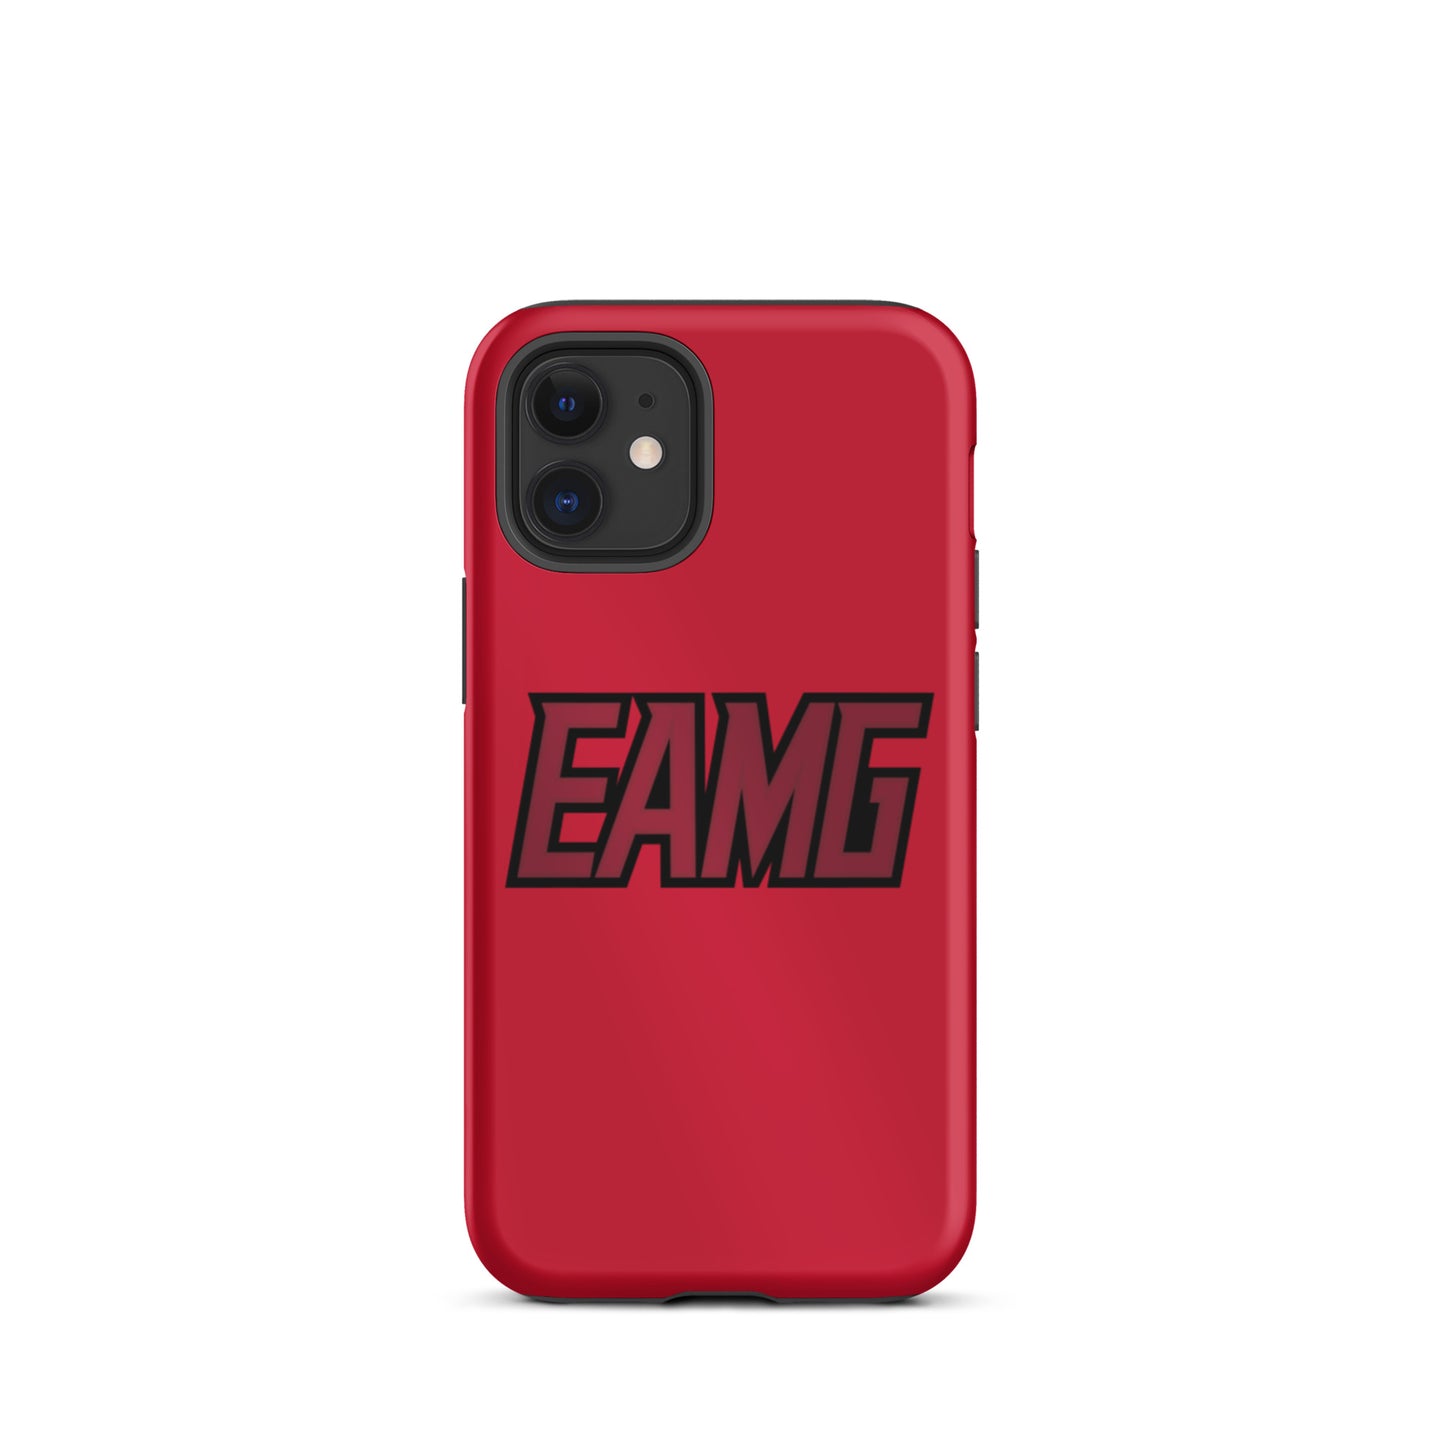 EAMG Tough iPhone case